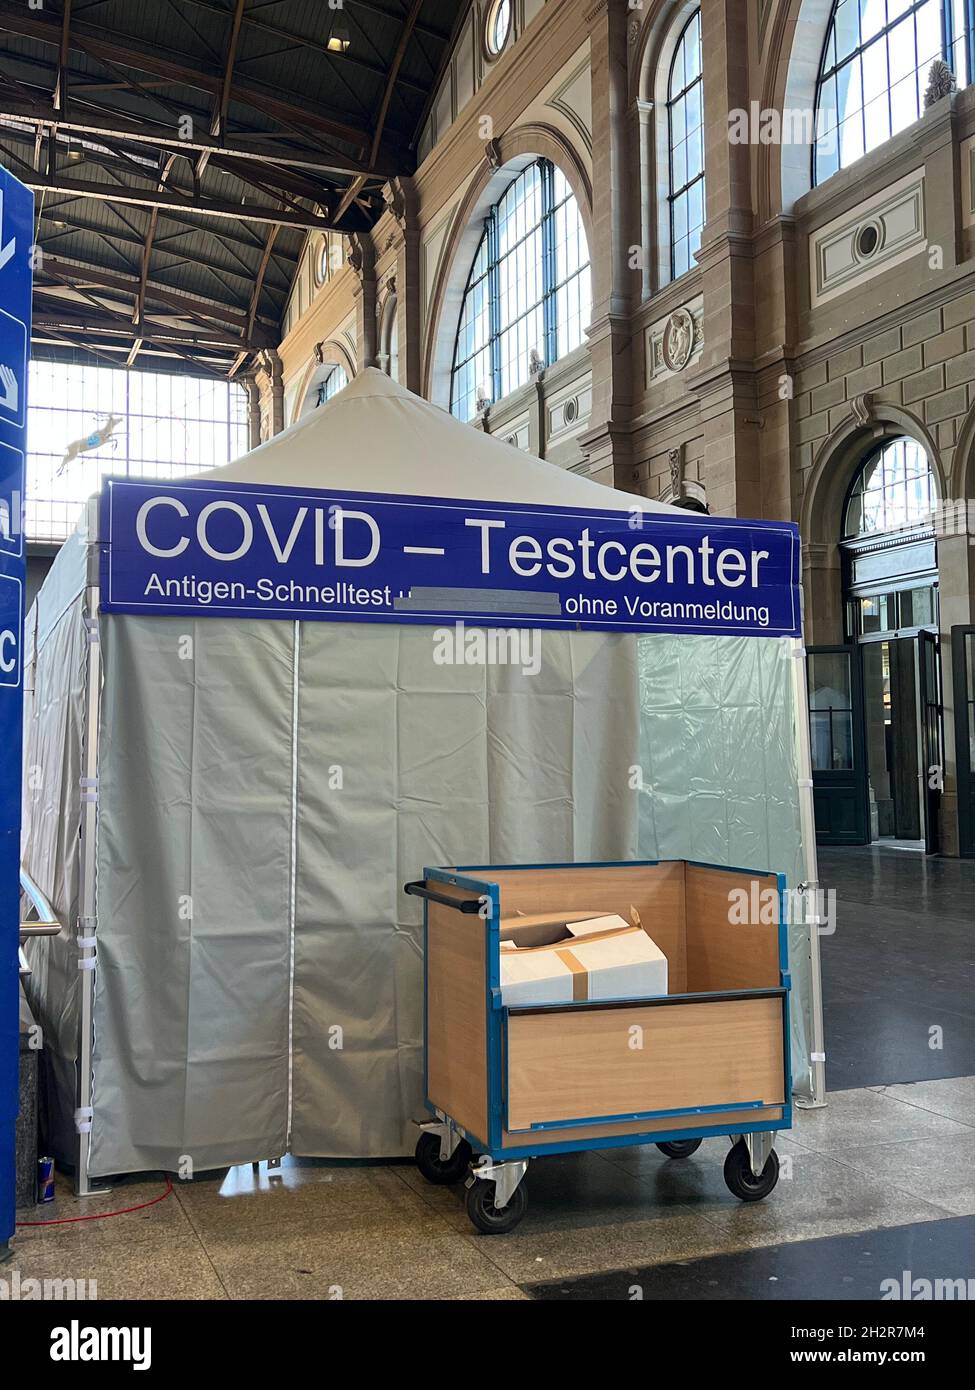 Centro di test Covid-19 sulla stazione ferroviaria principale di Zurigo. L'iscrizione in tedesco dice che non è necessario alcun appuntamento per il test dell'antigene di velocità. Posteriore Foto Stock